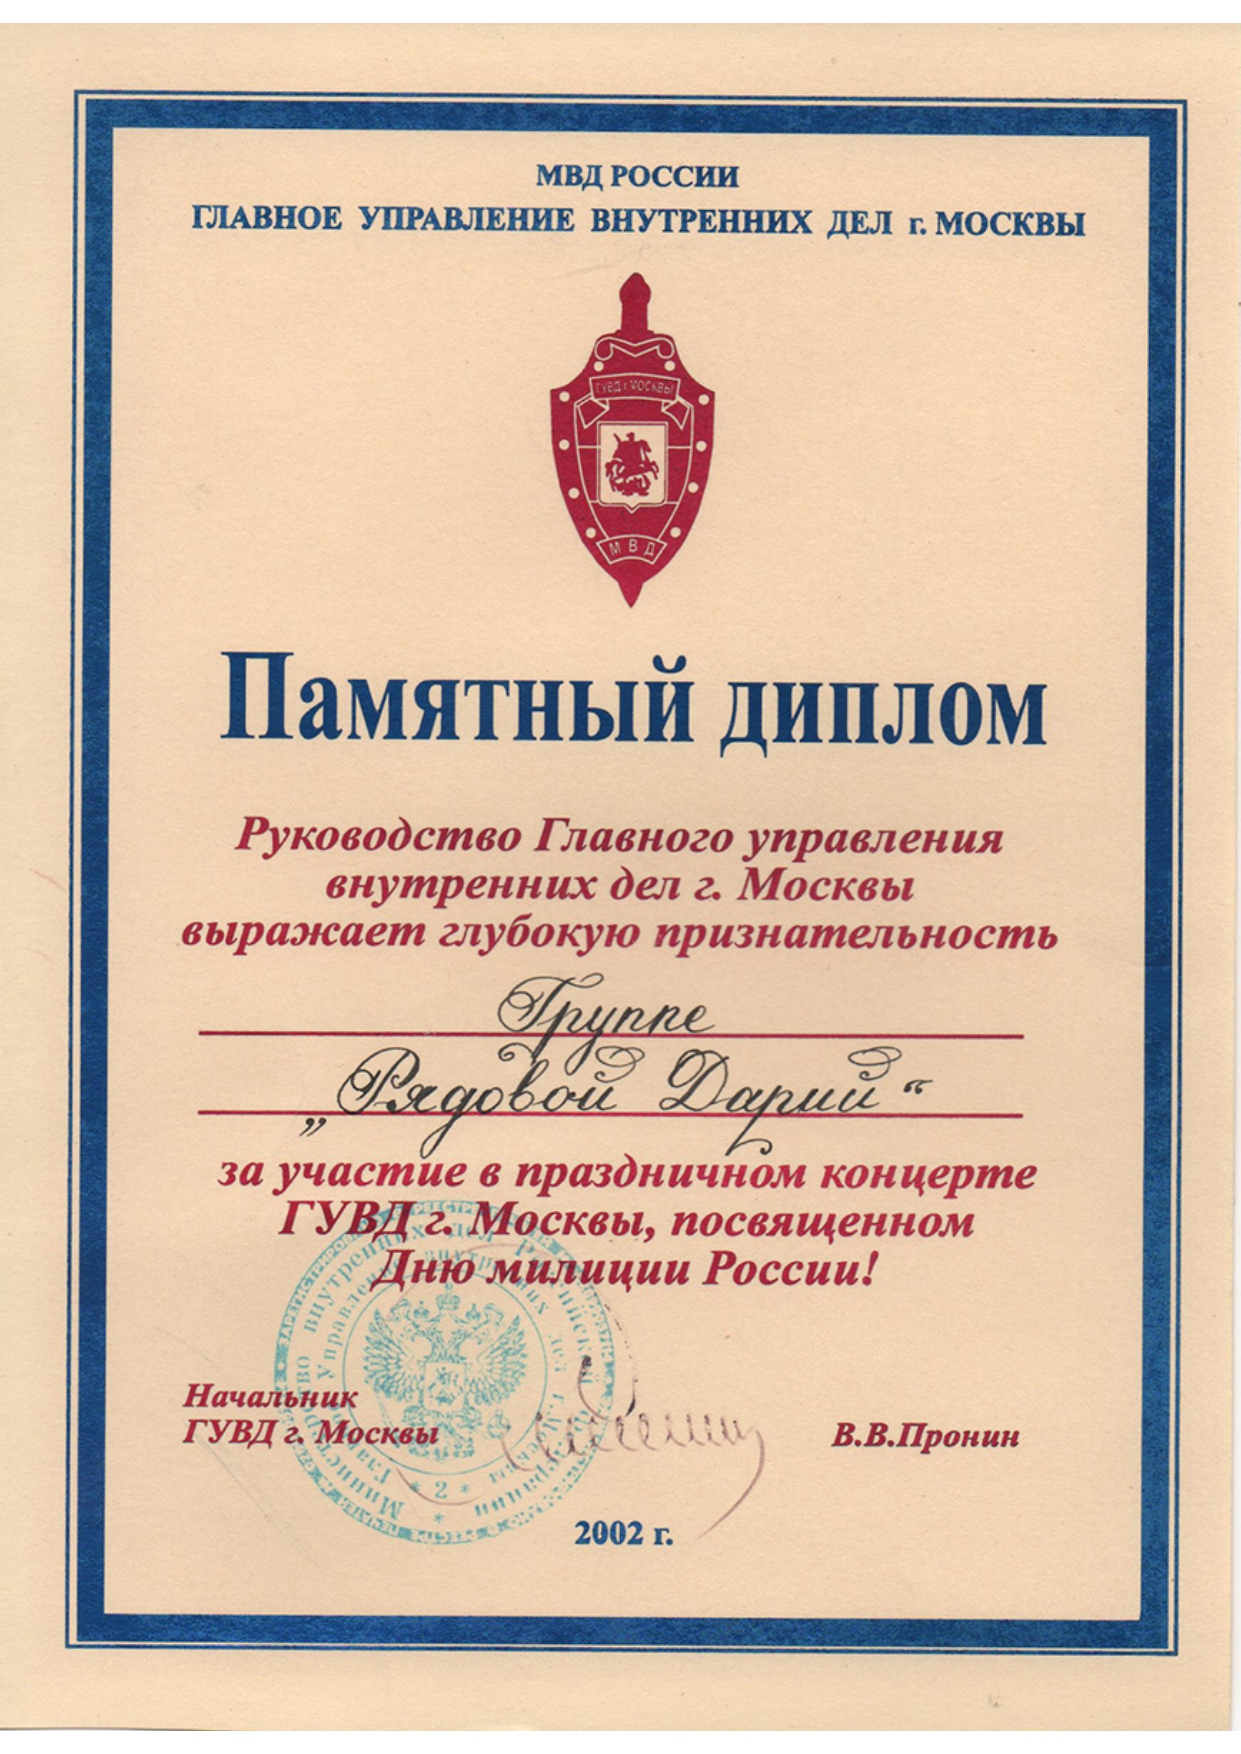 Диплом МВД (Рядовой Дарин), 2002 г.